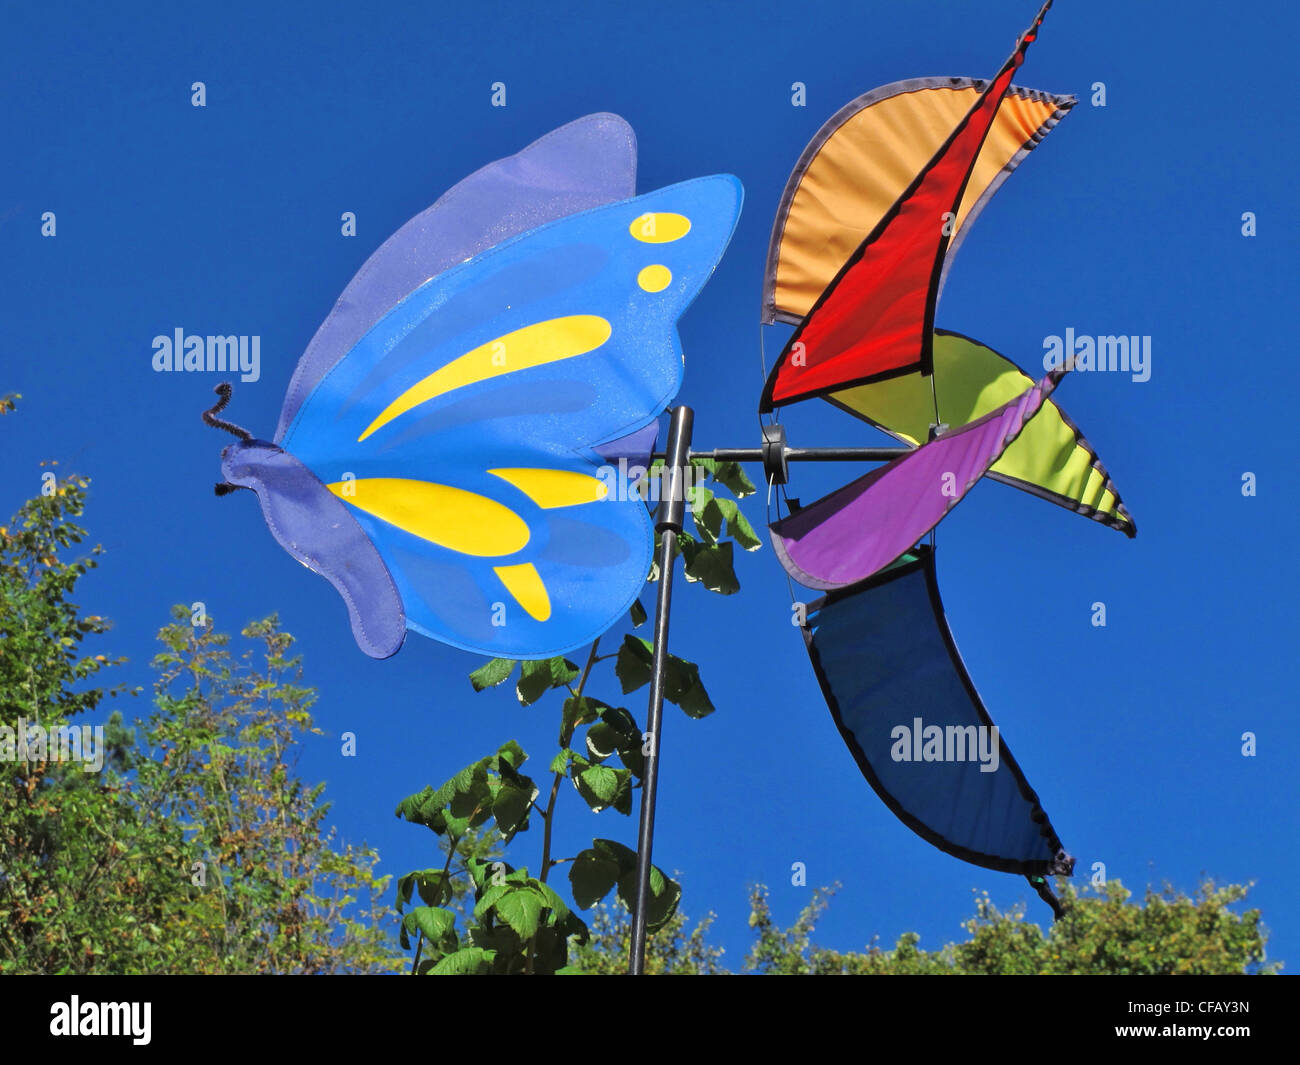 Windkraftanlage, Garten Windrad, Wind spielen, Abbildung, Himmel, blau, Gebüsch, Dickicht, Stockfoto